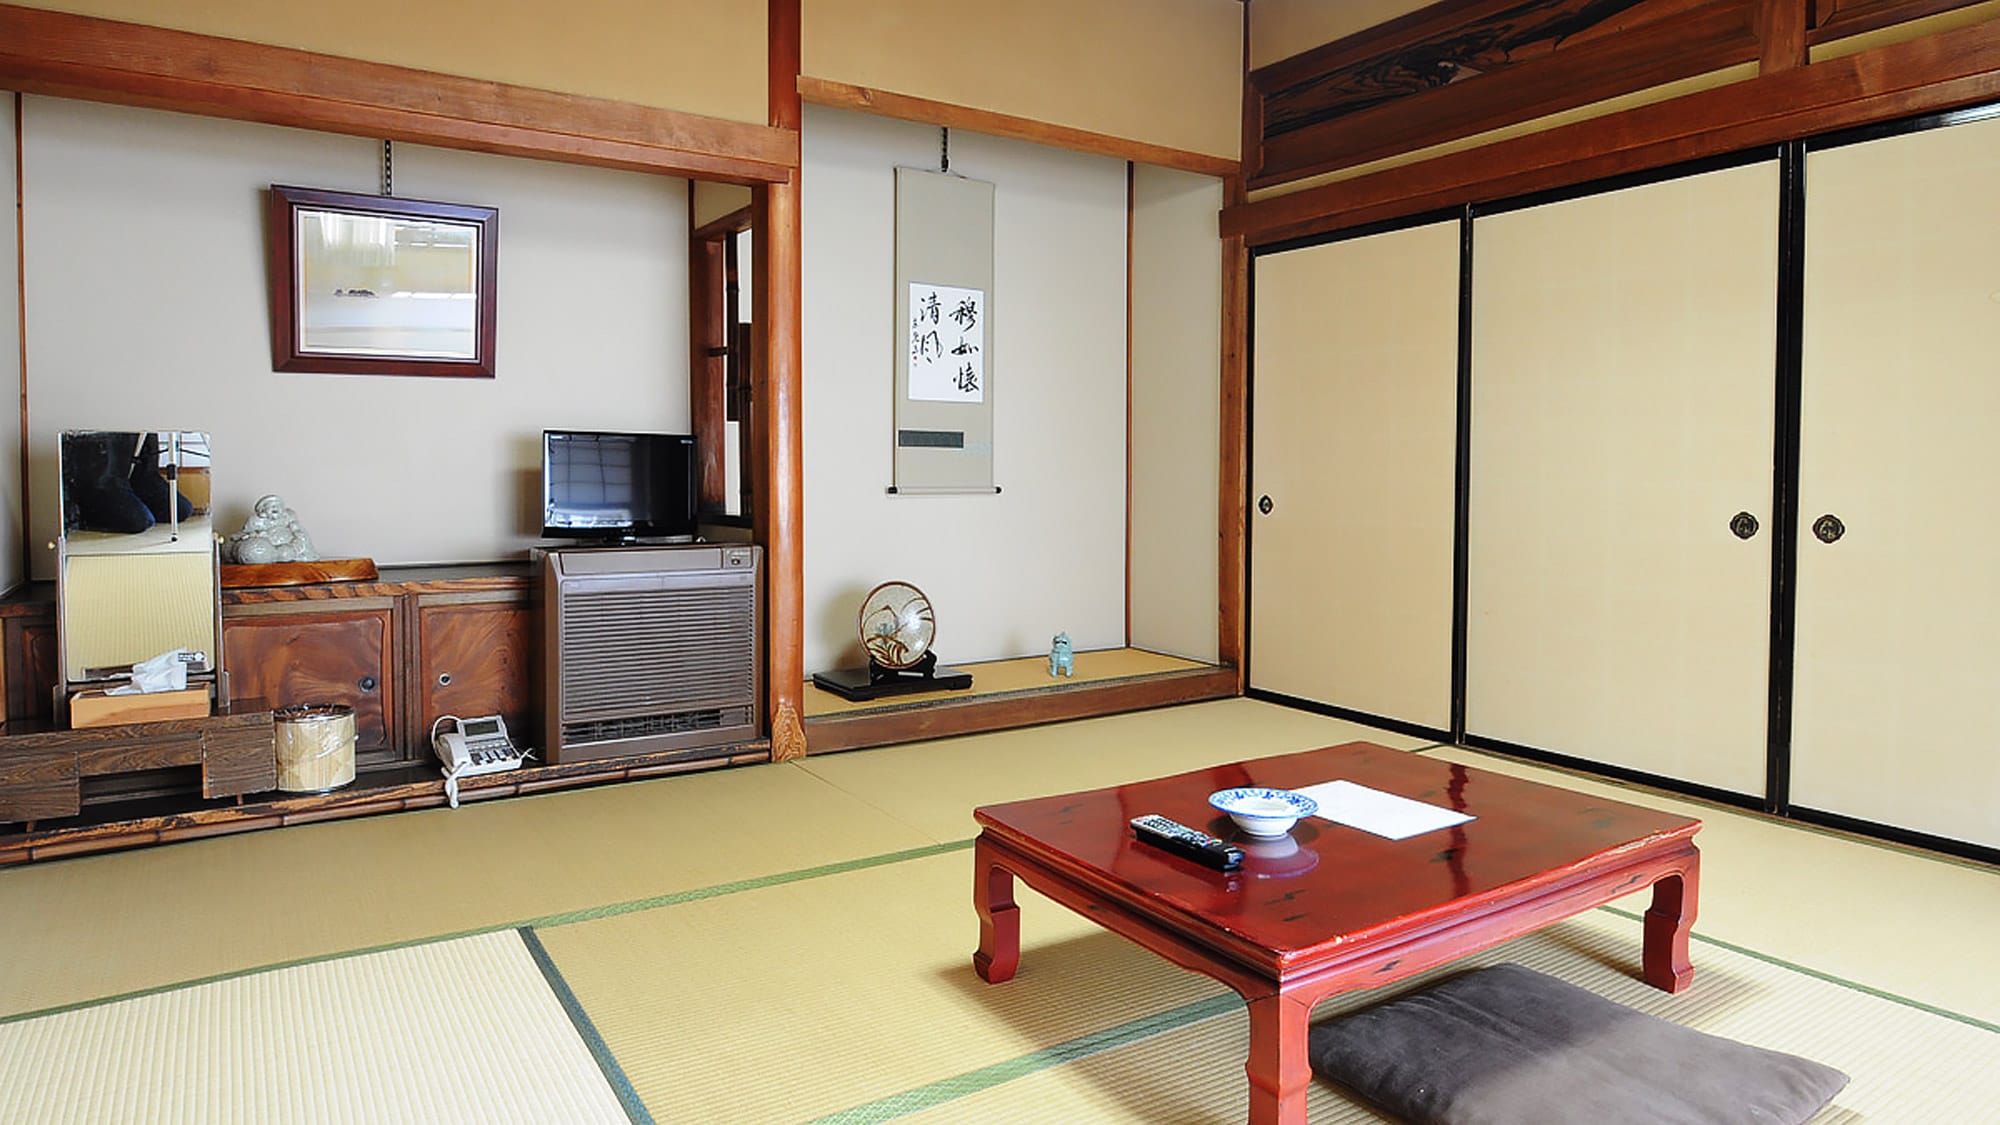 [ห้องสไตล์ญี่ปุ่น 8 เสื่อทาทามิ] ห้องสไตล์ญี่ปุ่นล้วนเก่า * โปรดทราบว่าห้องนี้ไม่สามารถล็อคได้เนื่องจากไม่มีกุญแจ